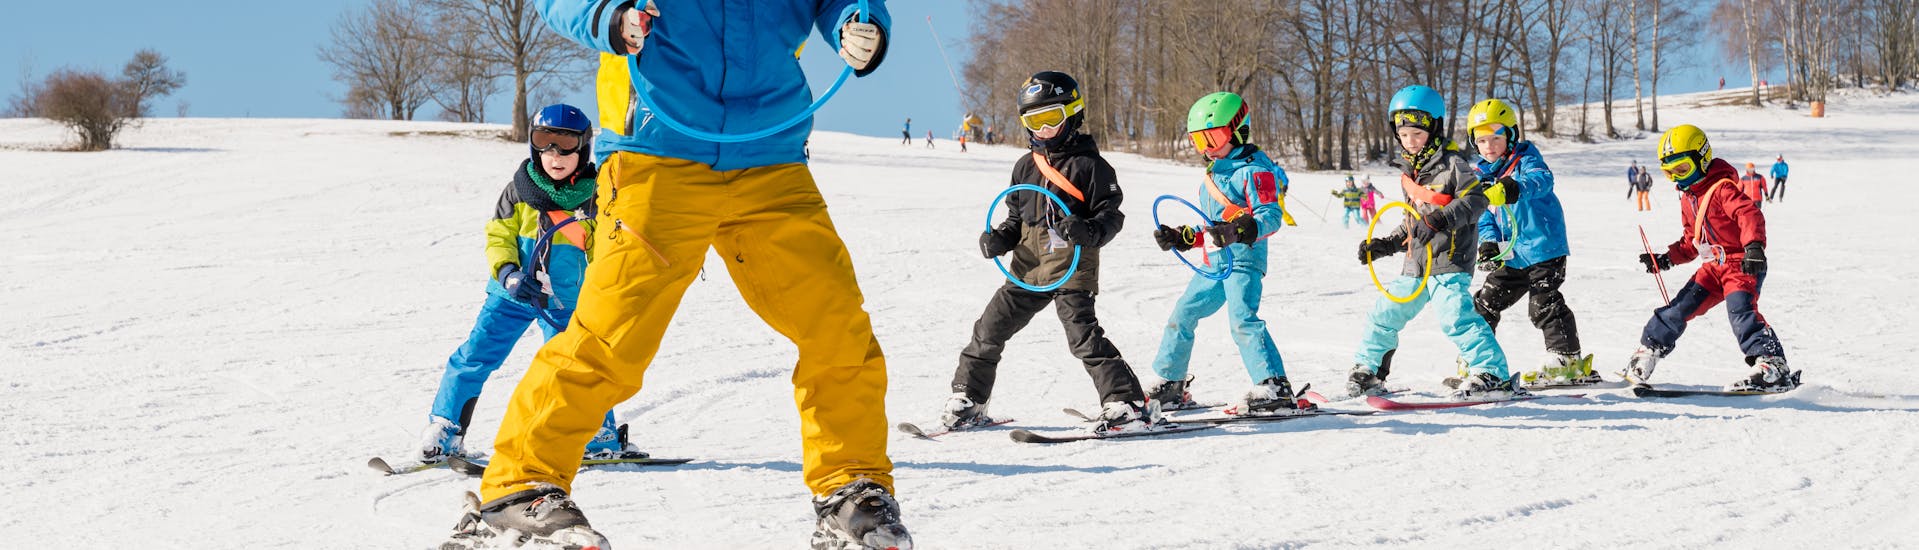 Cours de ski Enfants dès 5 ans - Avancé.